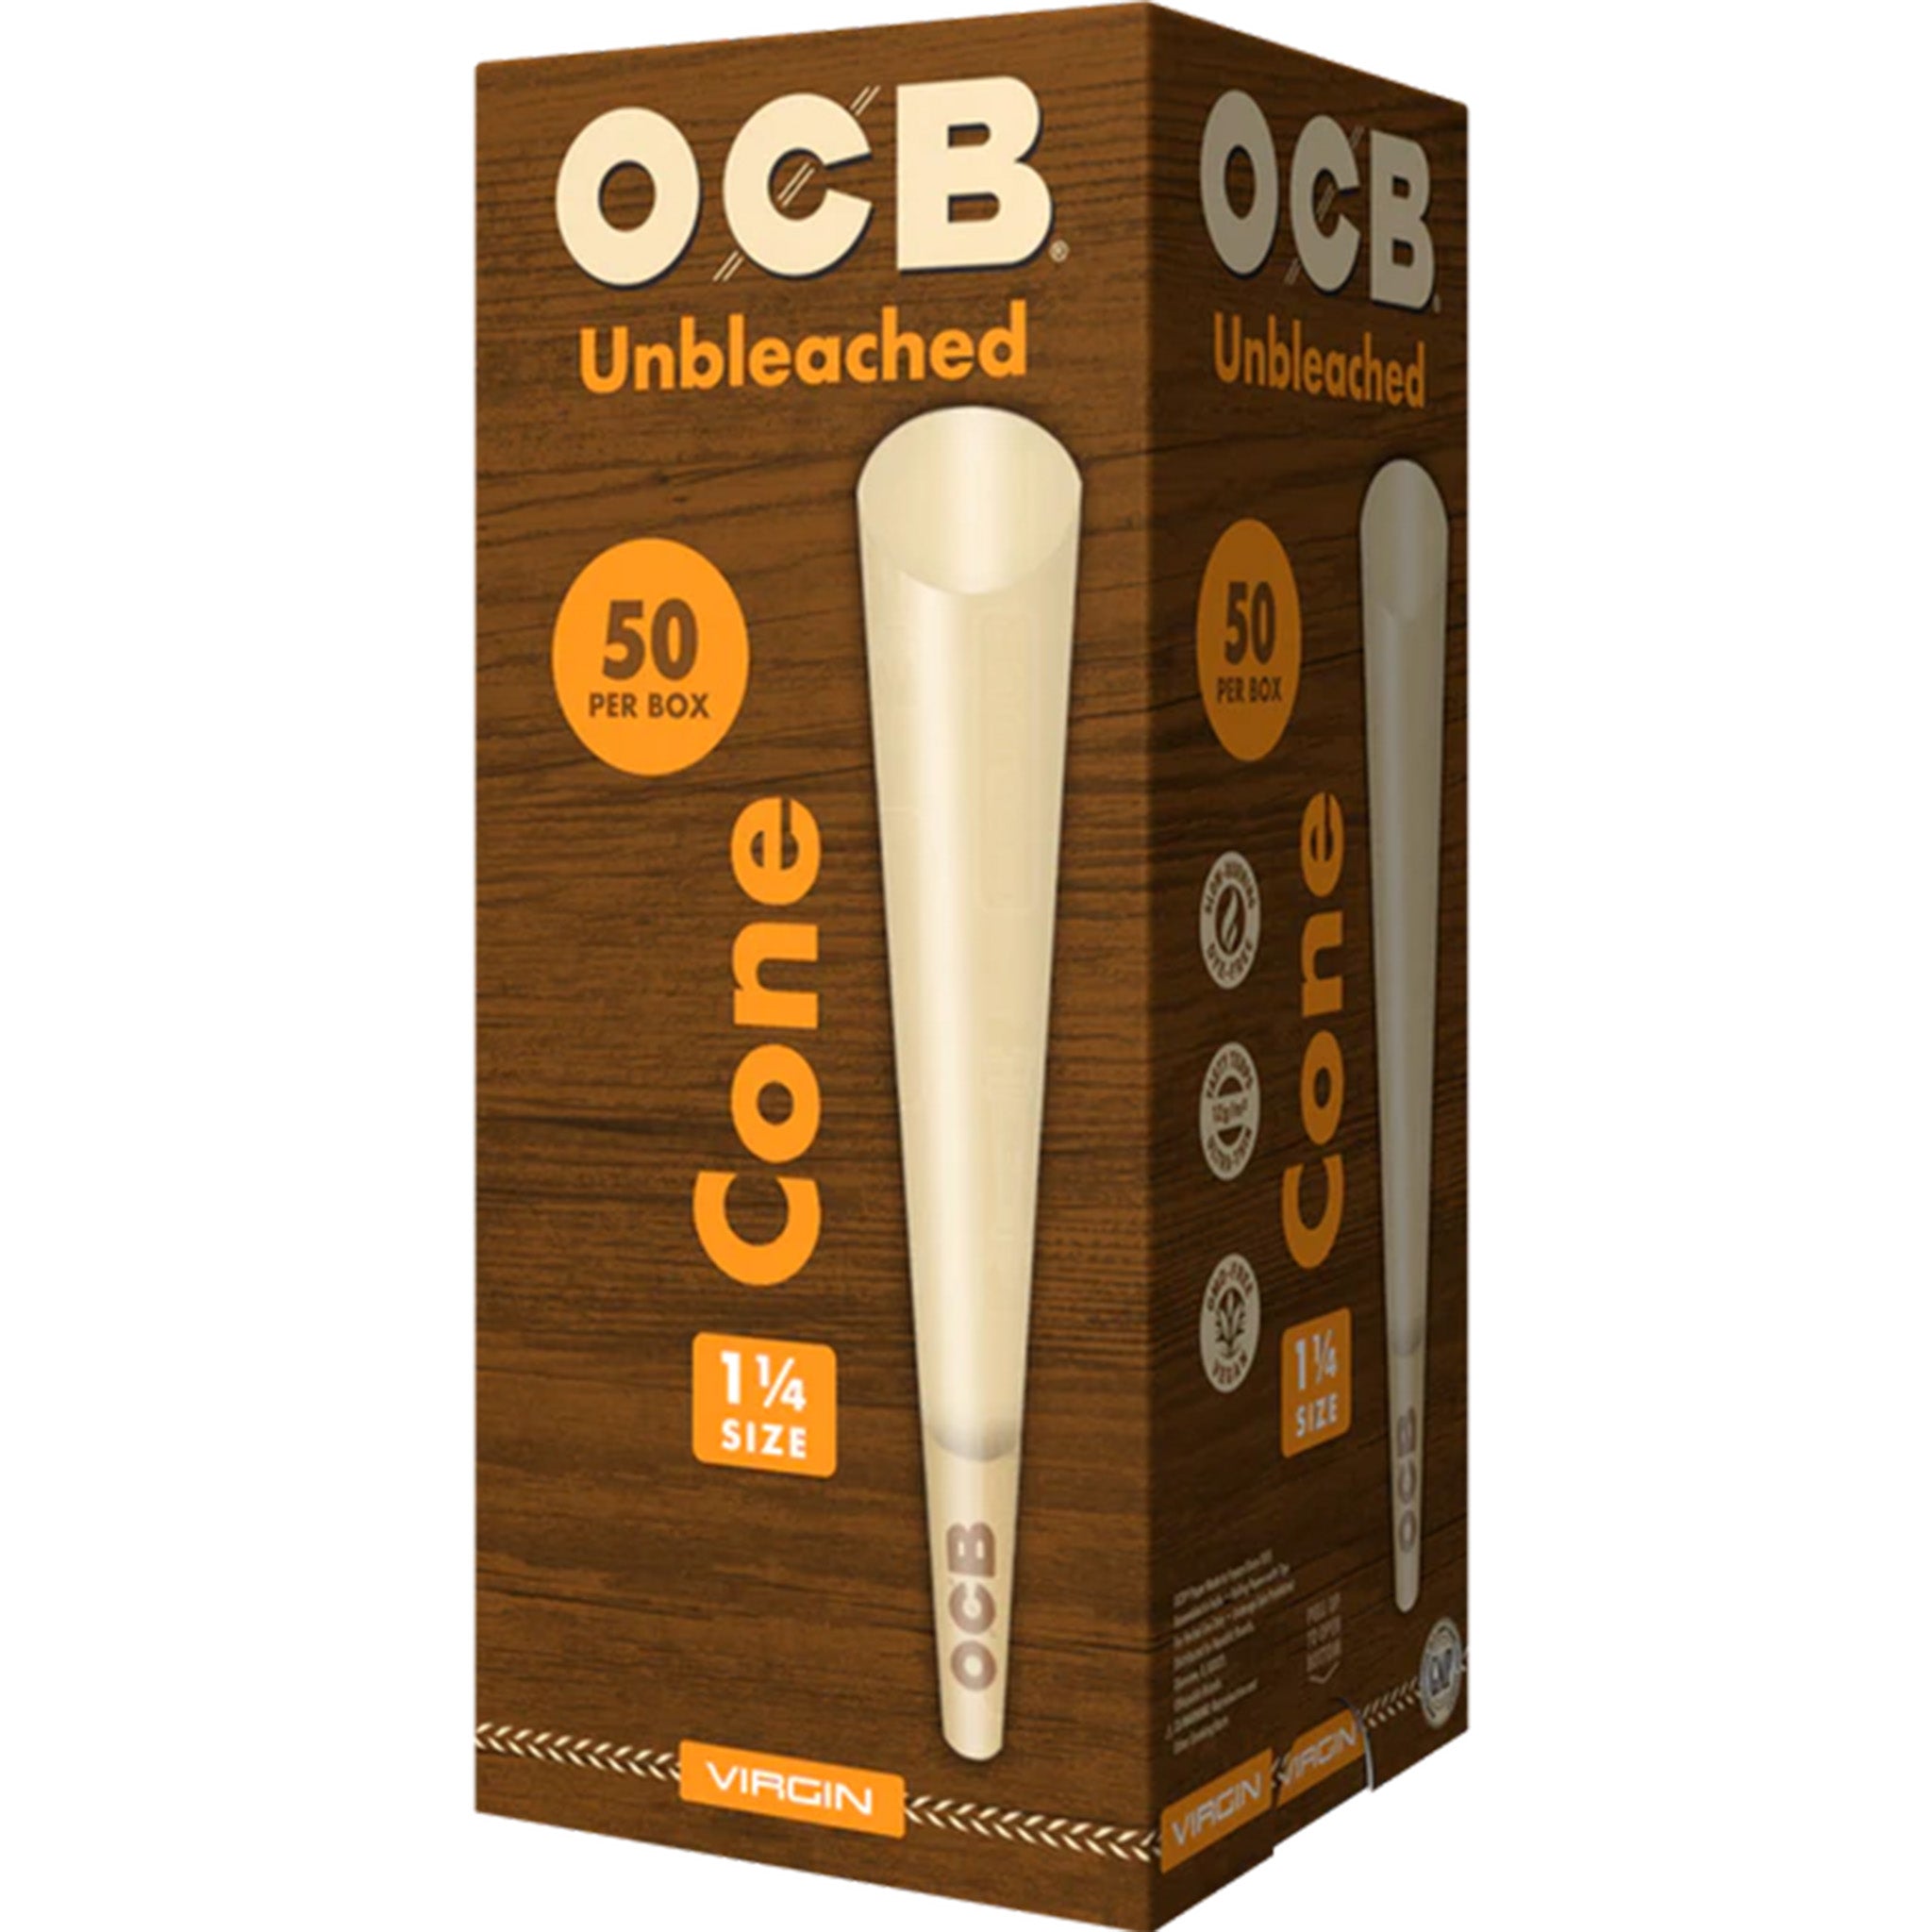 OCB Virgin 1 1/4 Cones Large Box Cone OCB 50 